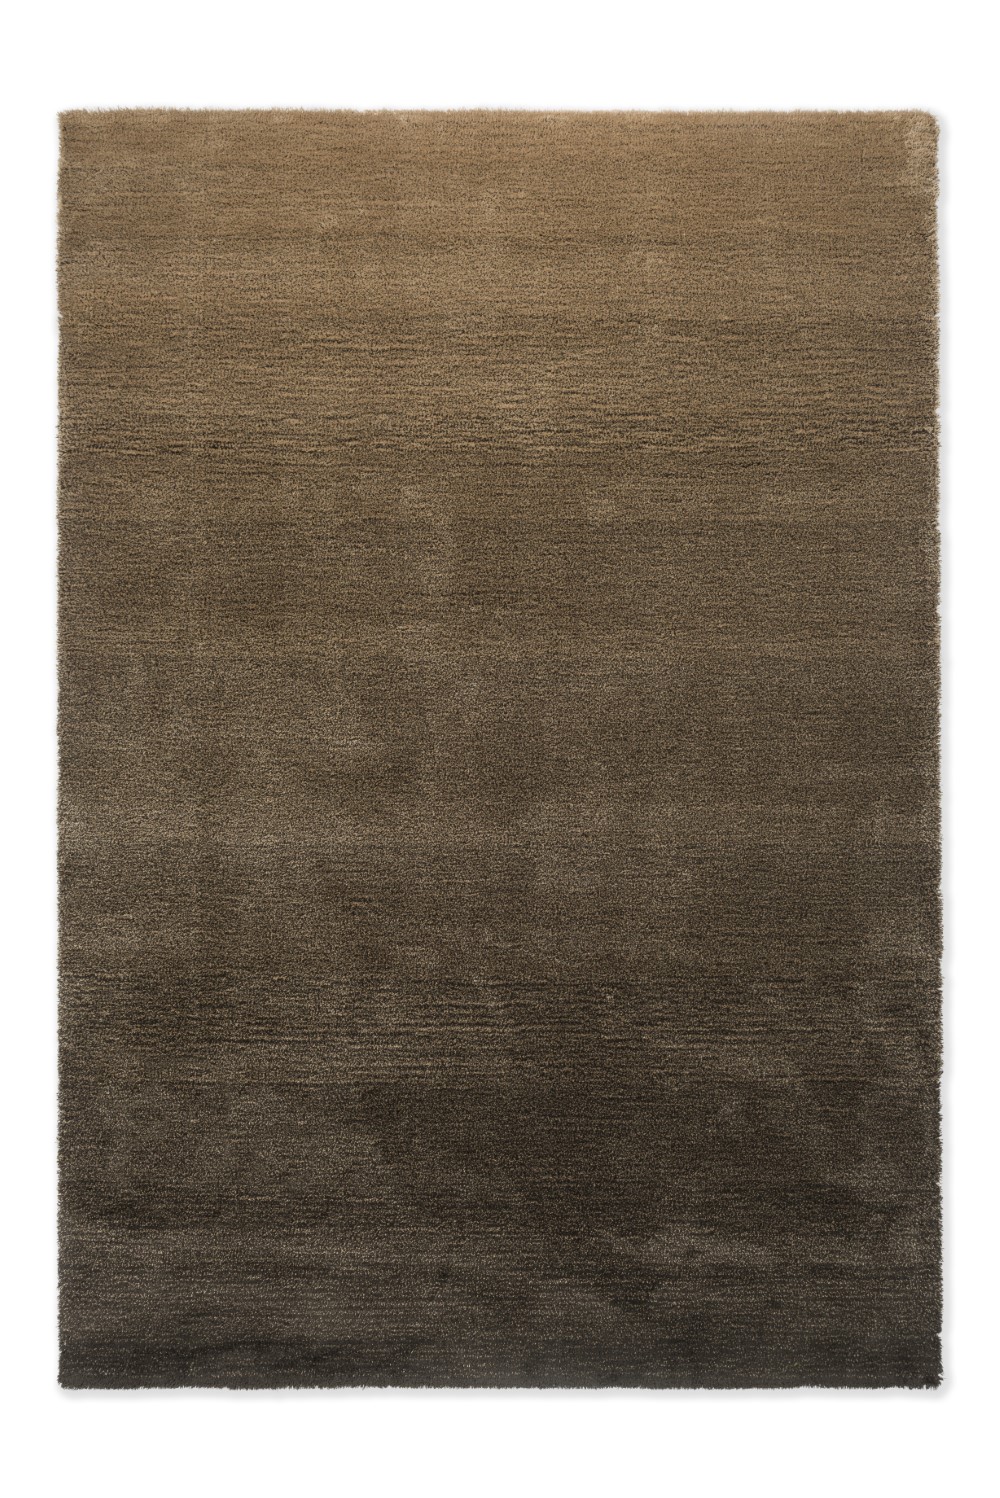 brink-campman-rug-shade-low-beige-dark-chocolate-010101